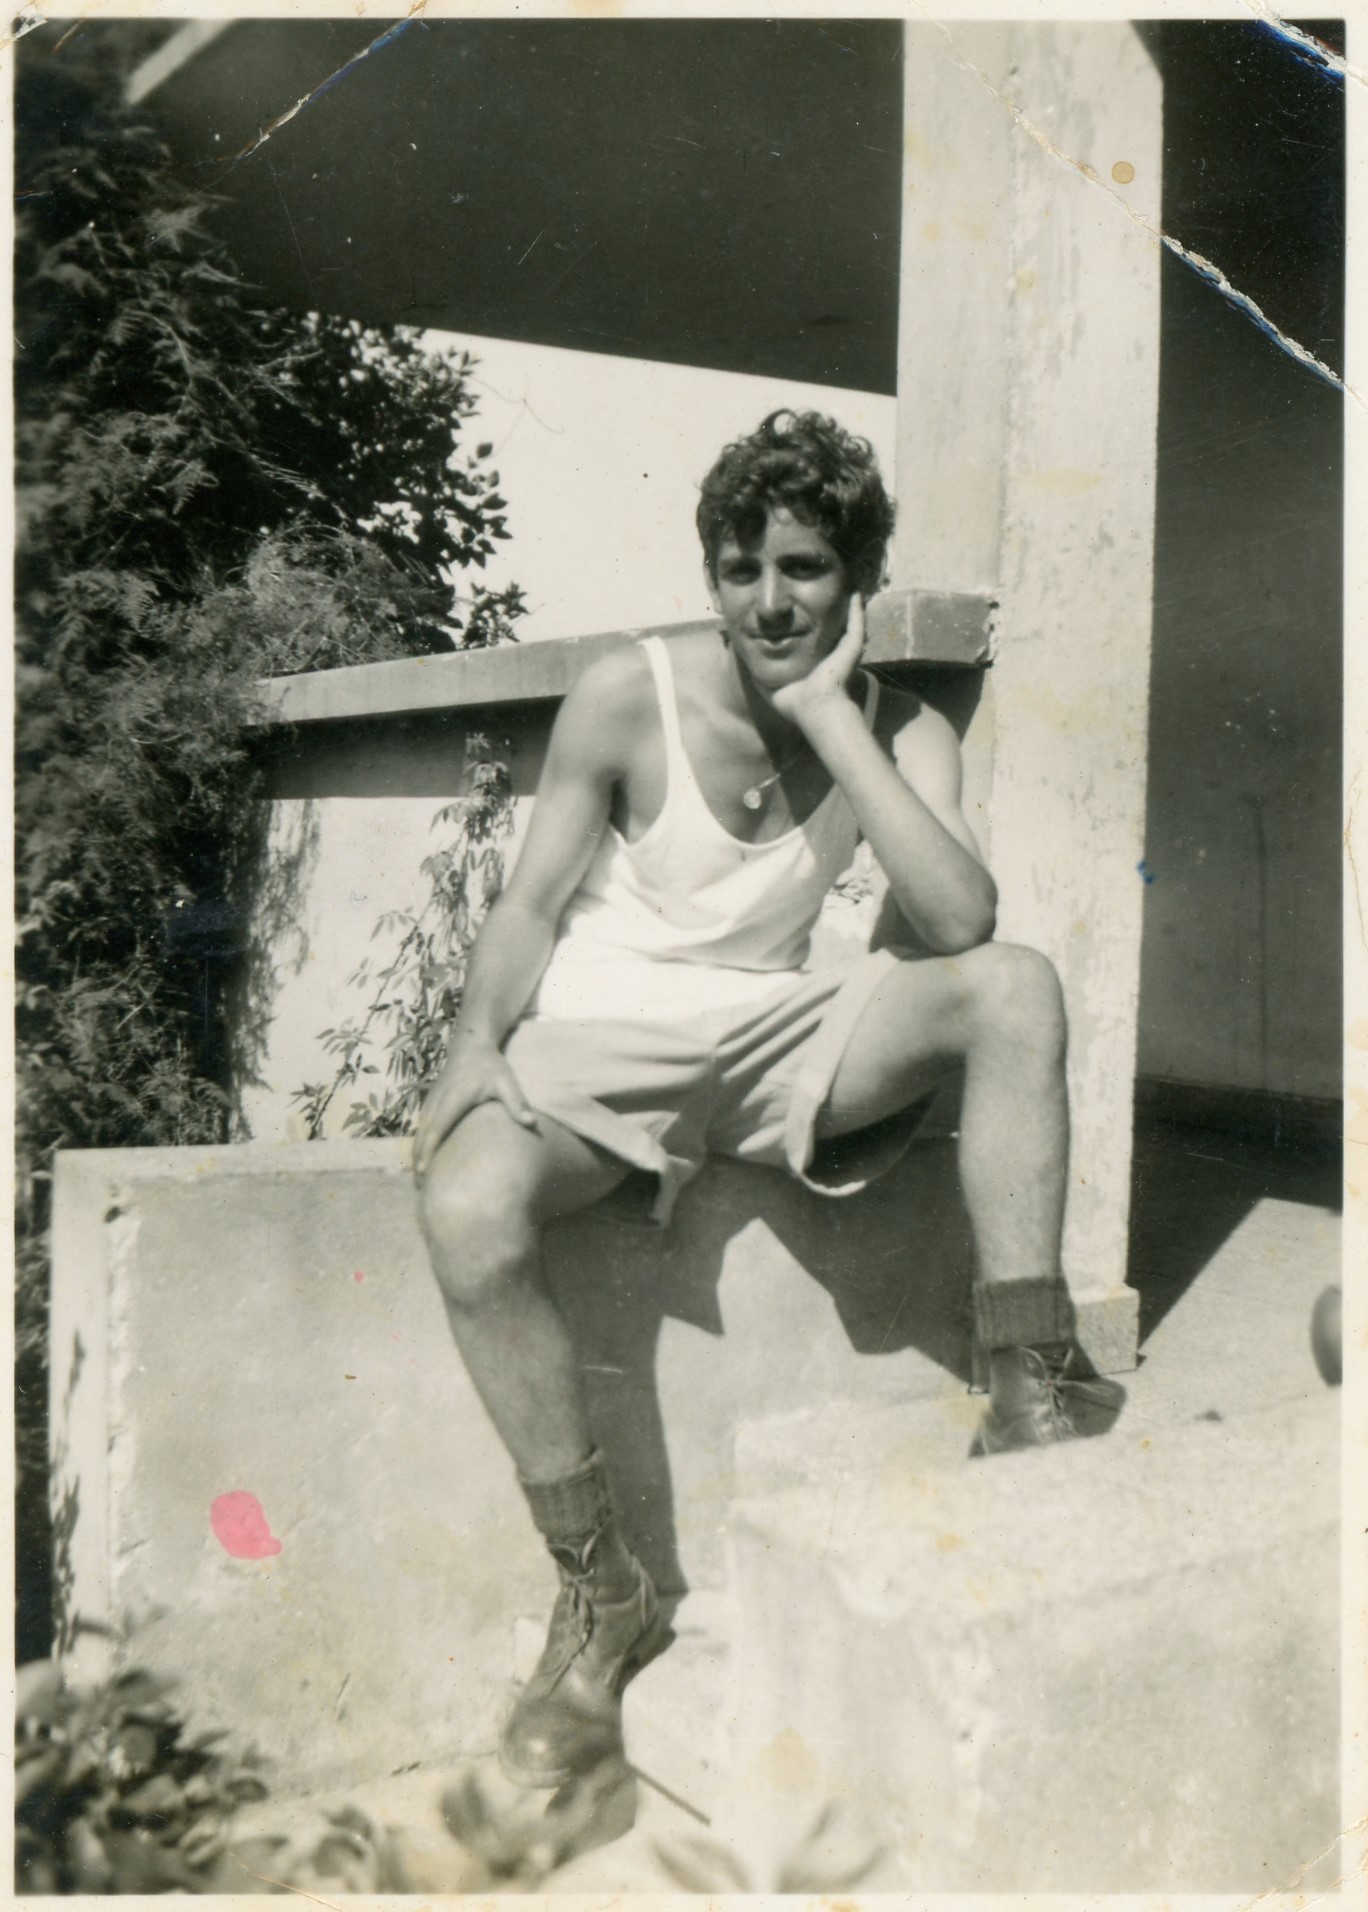 יהודה אושרוביץ יושב בכניסה למרפסת בבית המשפחה ברחוב יהודה הלוי 53 רעננה, 1947